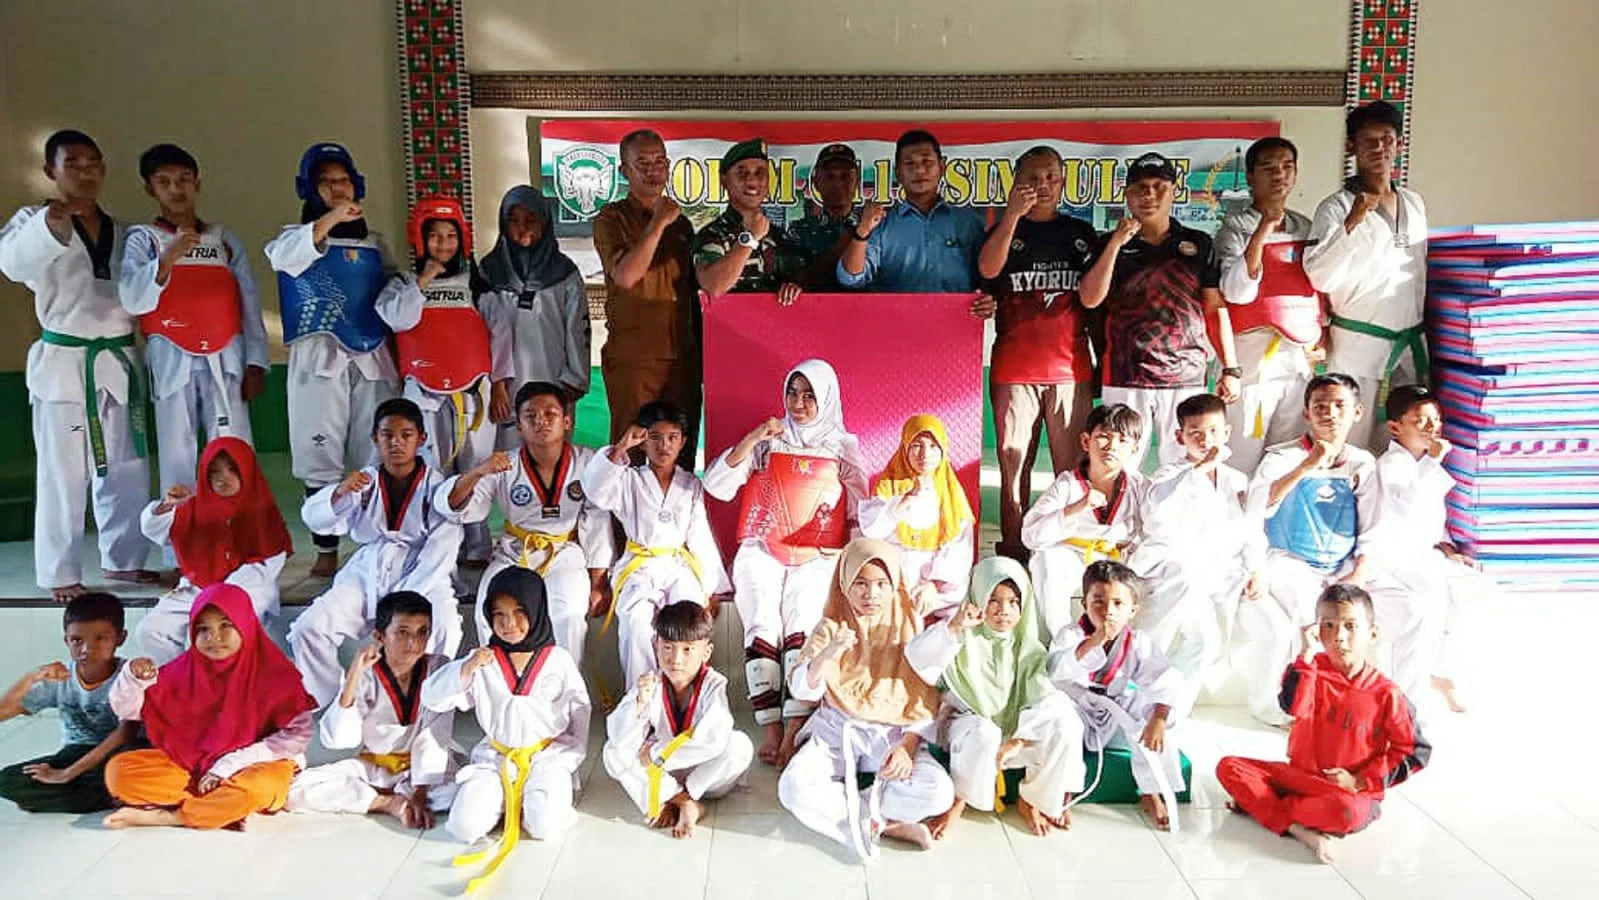 Dandim 0115 Simeulue Resmi Membuka Tempat Latihan Taekwondo Baru dan Penyerahan Matras Untuk Atlit Simeulue